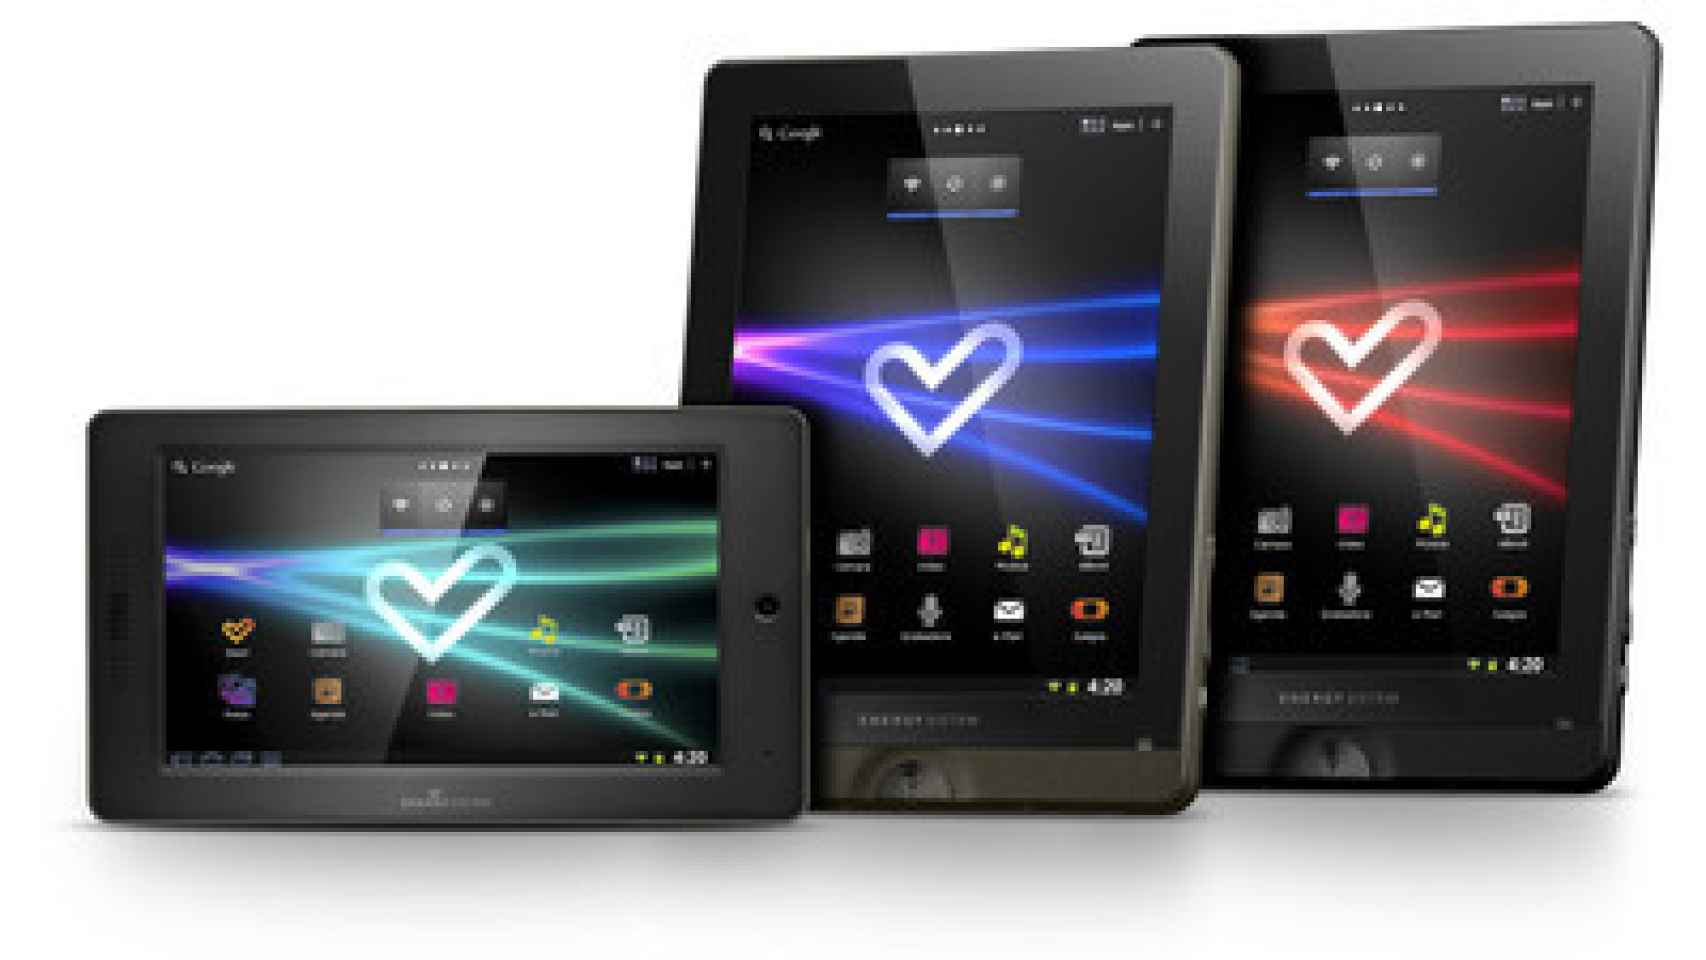 Nueva gama de tablets low cost llega al mercado de la mano de Energy Sistem